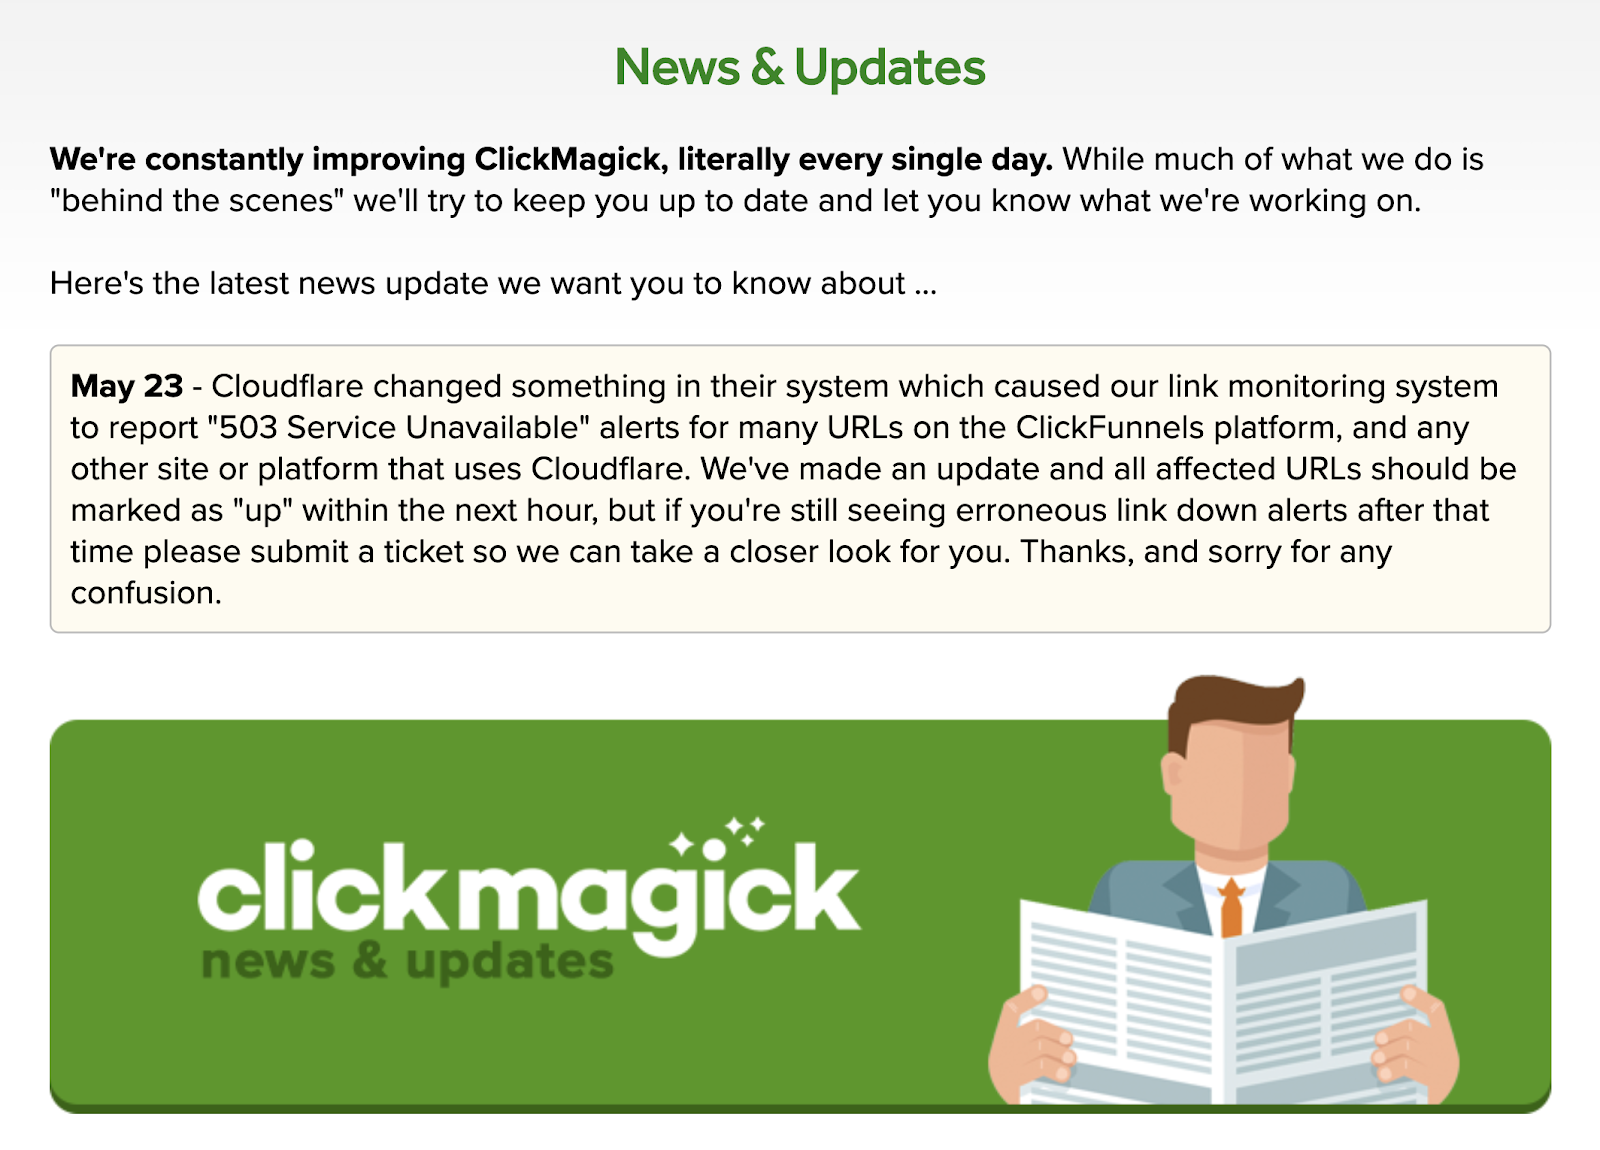 ClickMagick News and Updates